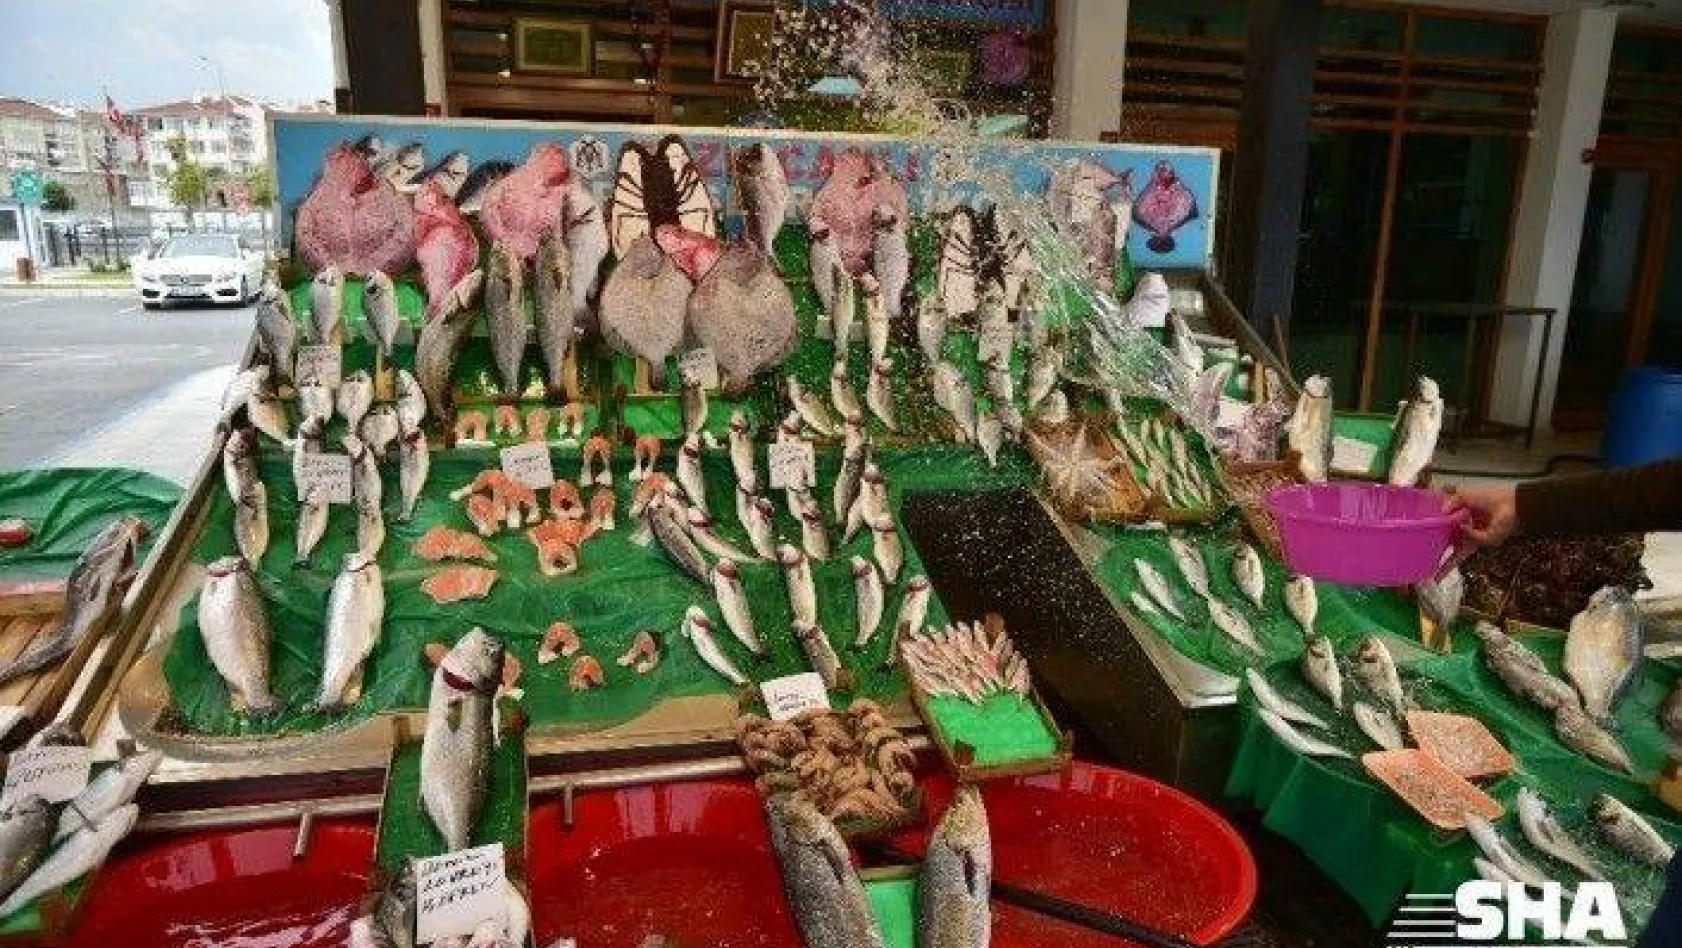 İstanbul'da koronavirüs sürecinde balık satışları arttı